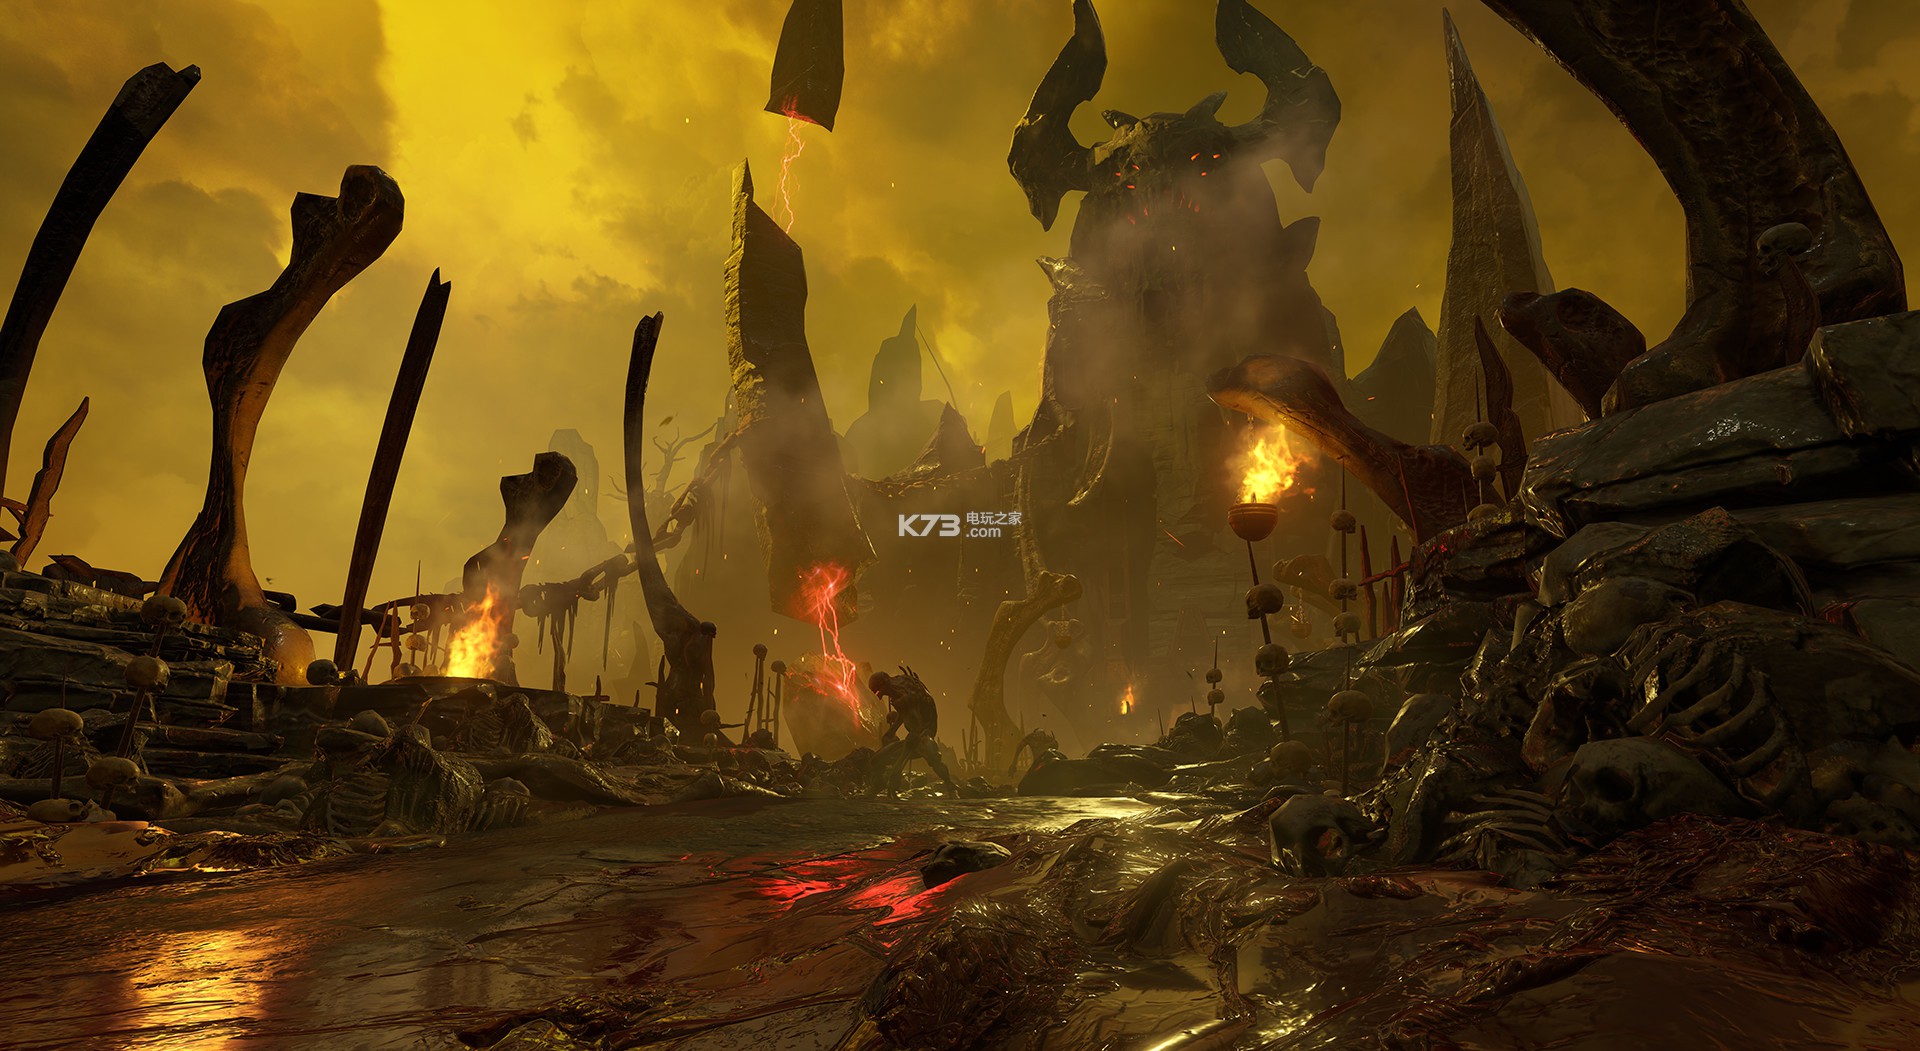 毁灭战士4中文版下载 毁灭战士4攻略 Doom4 K73电玩之家